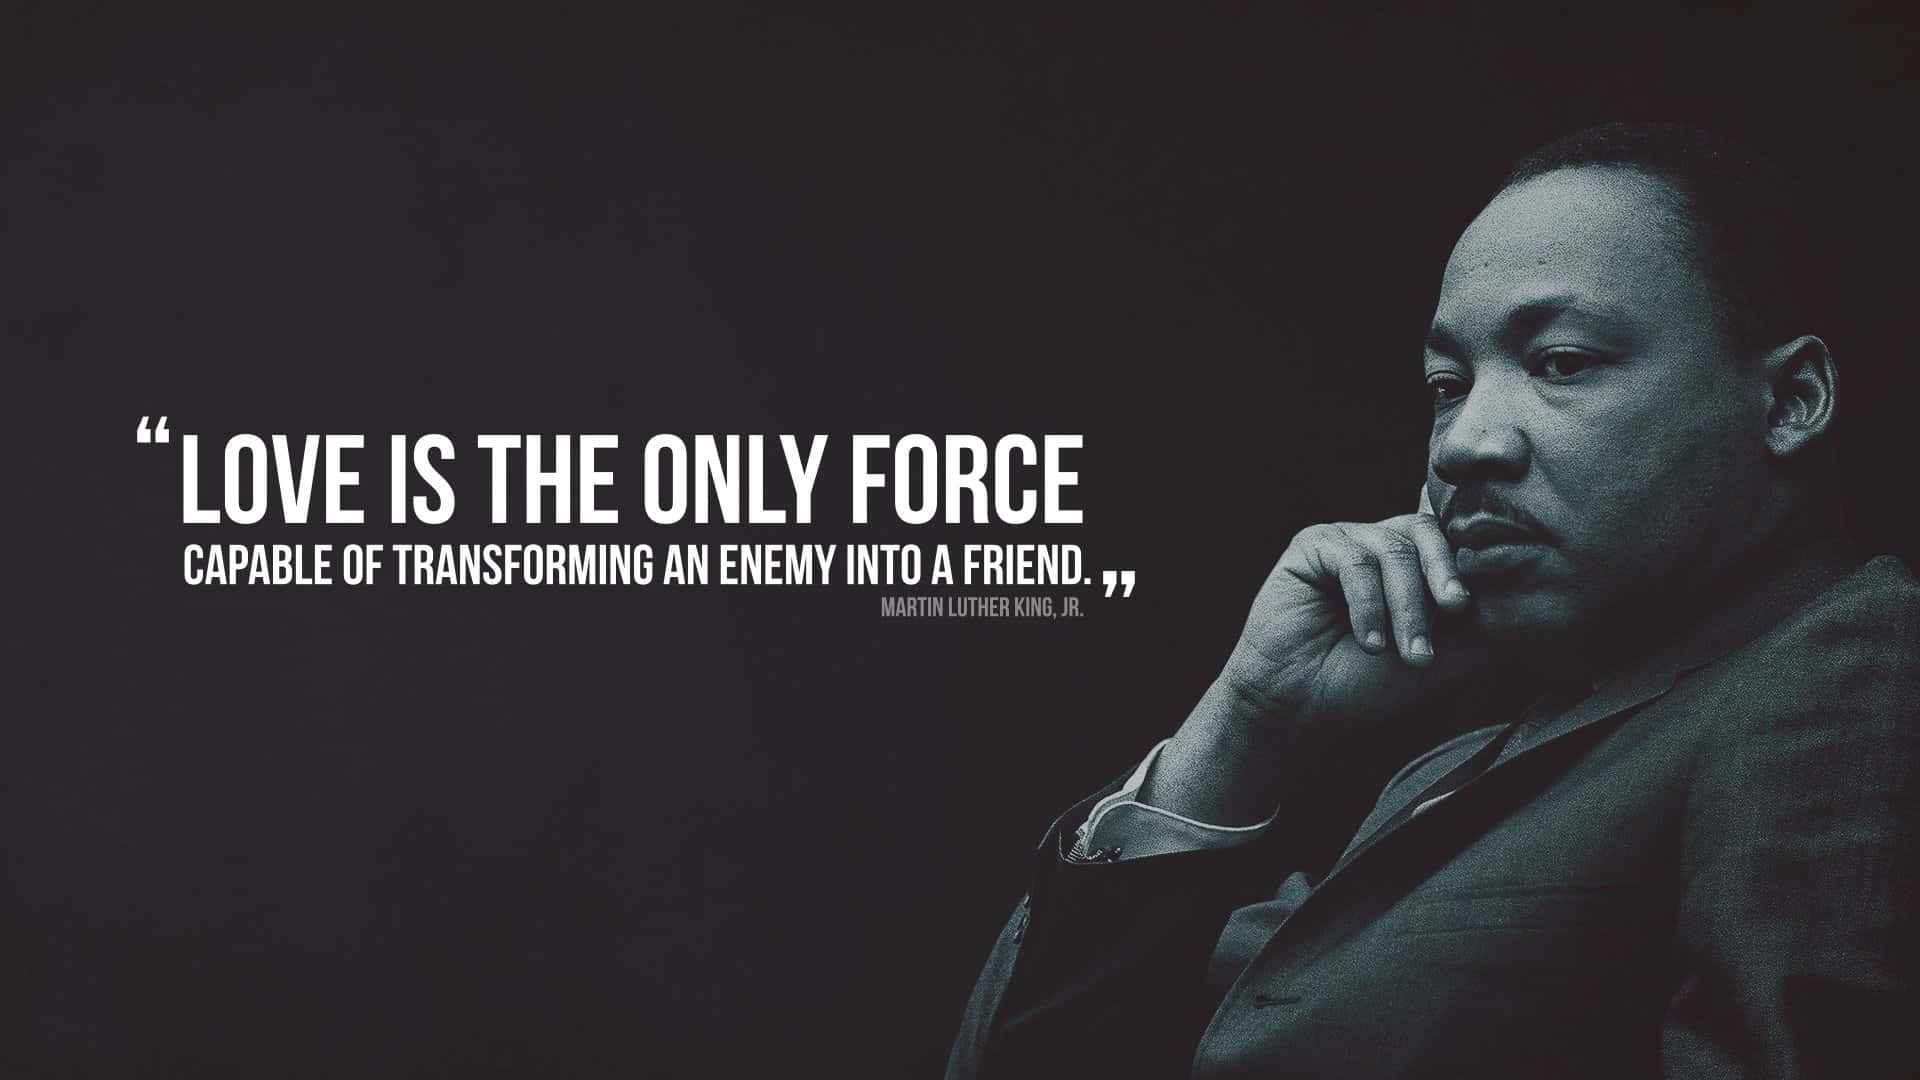 Posterispirazionale Di Martin Luther King Sfondo